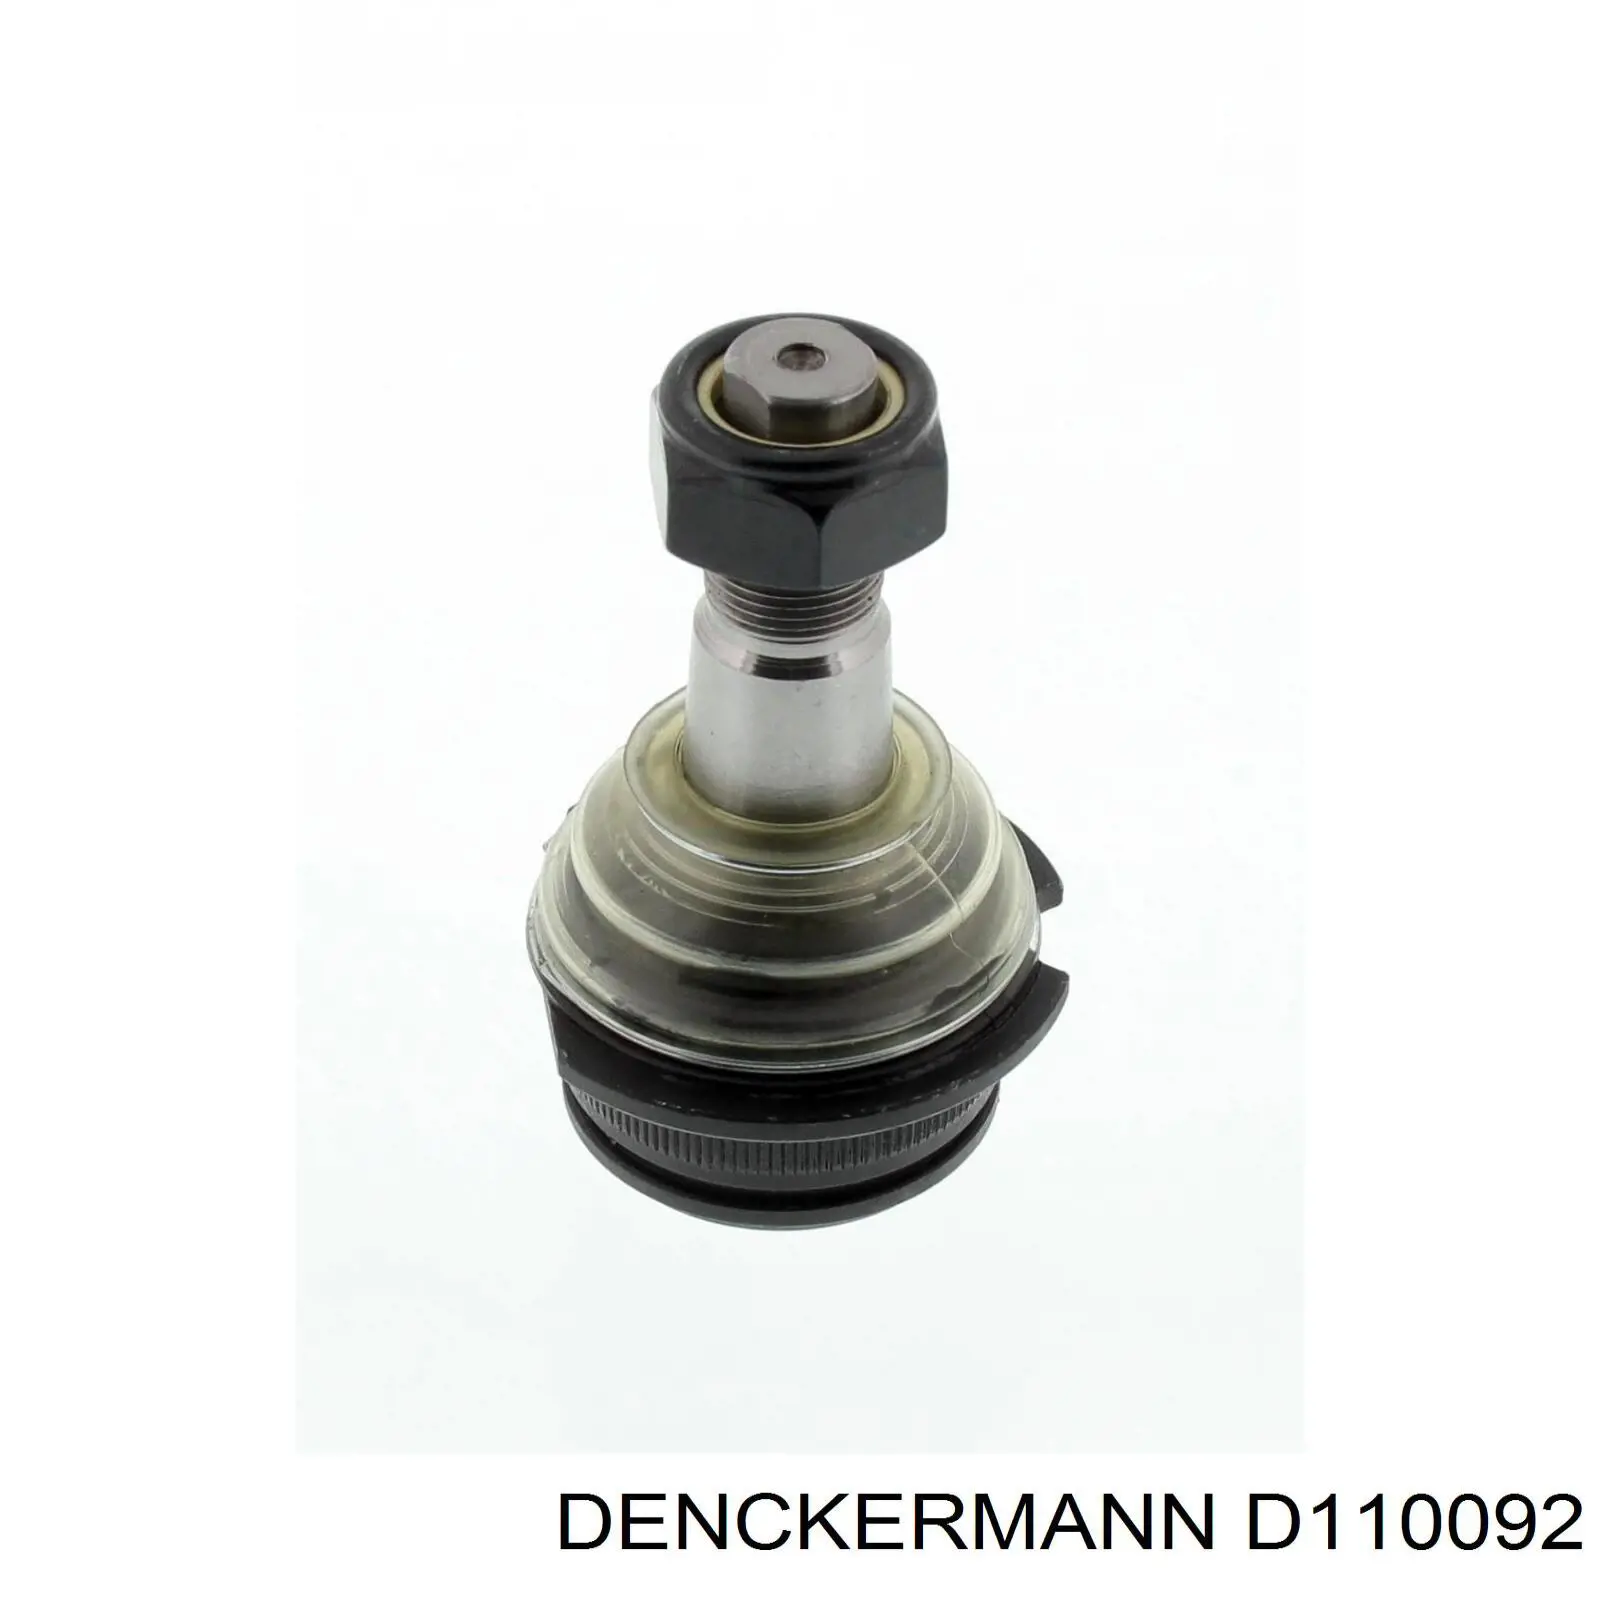 D110092 Denckermann rótula de suspensión inferior